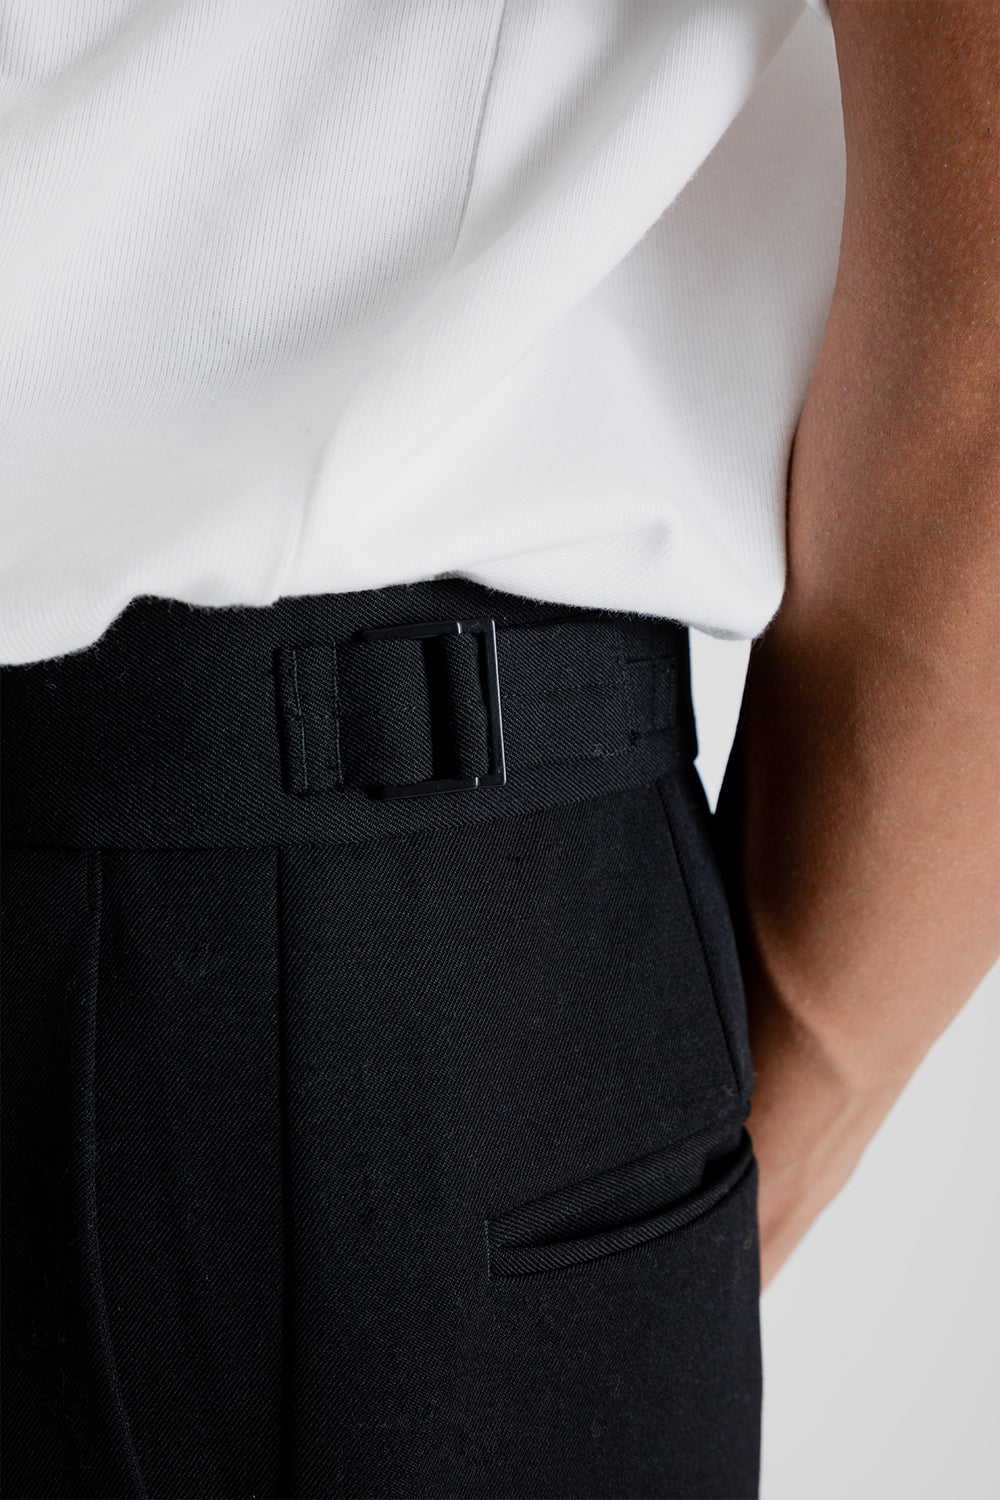 Zara High Waist Trouser (no belt)